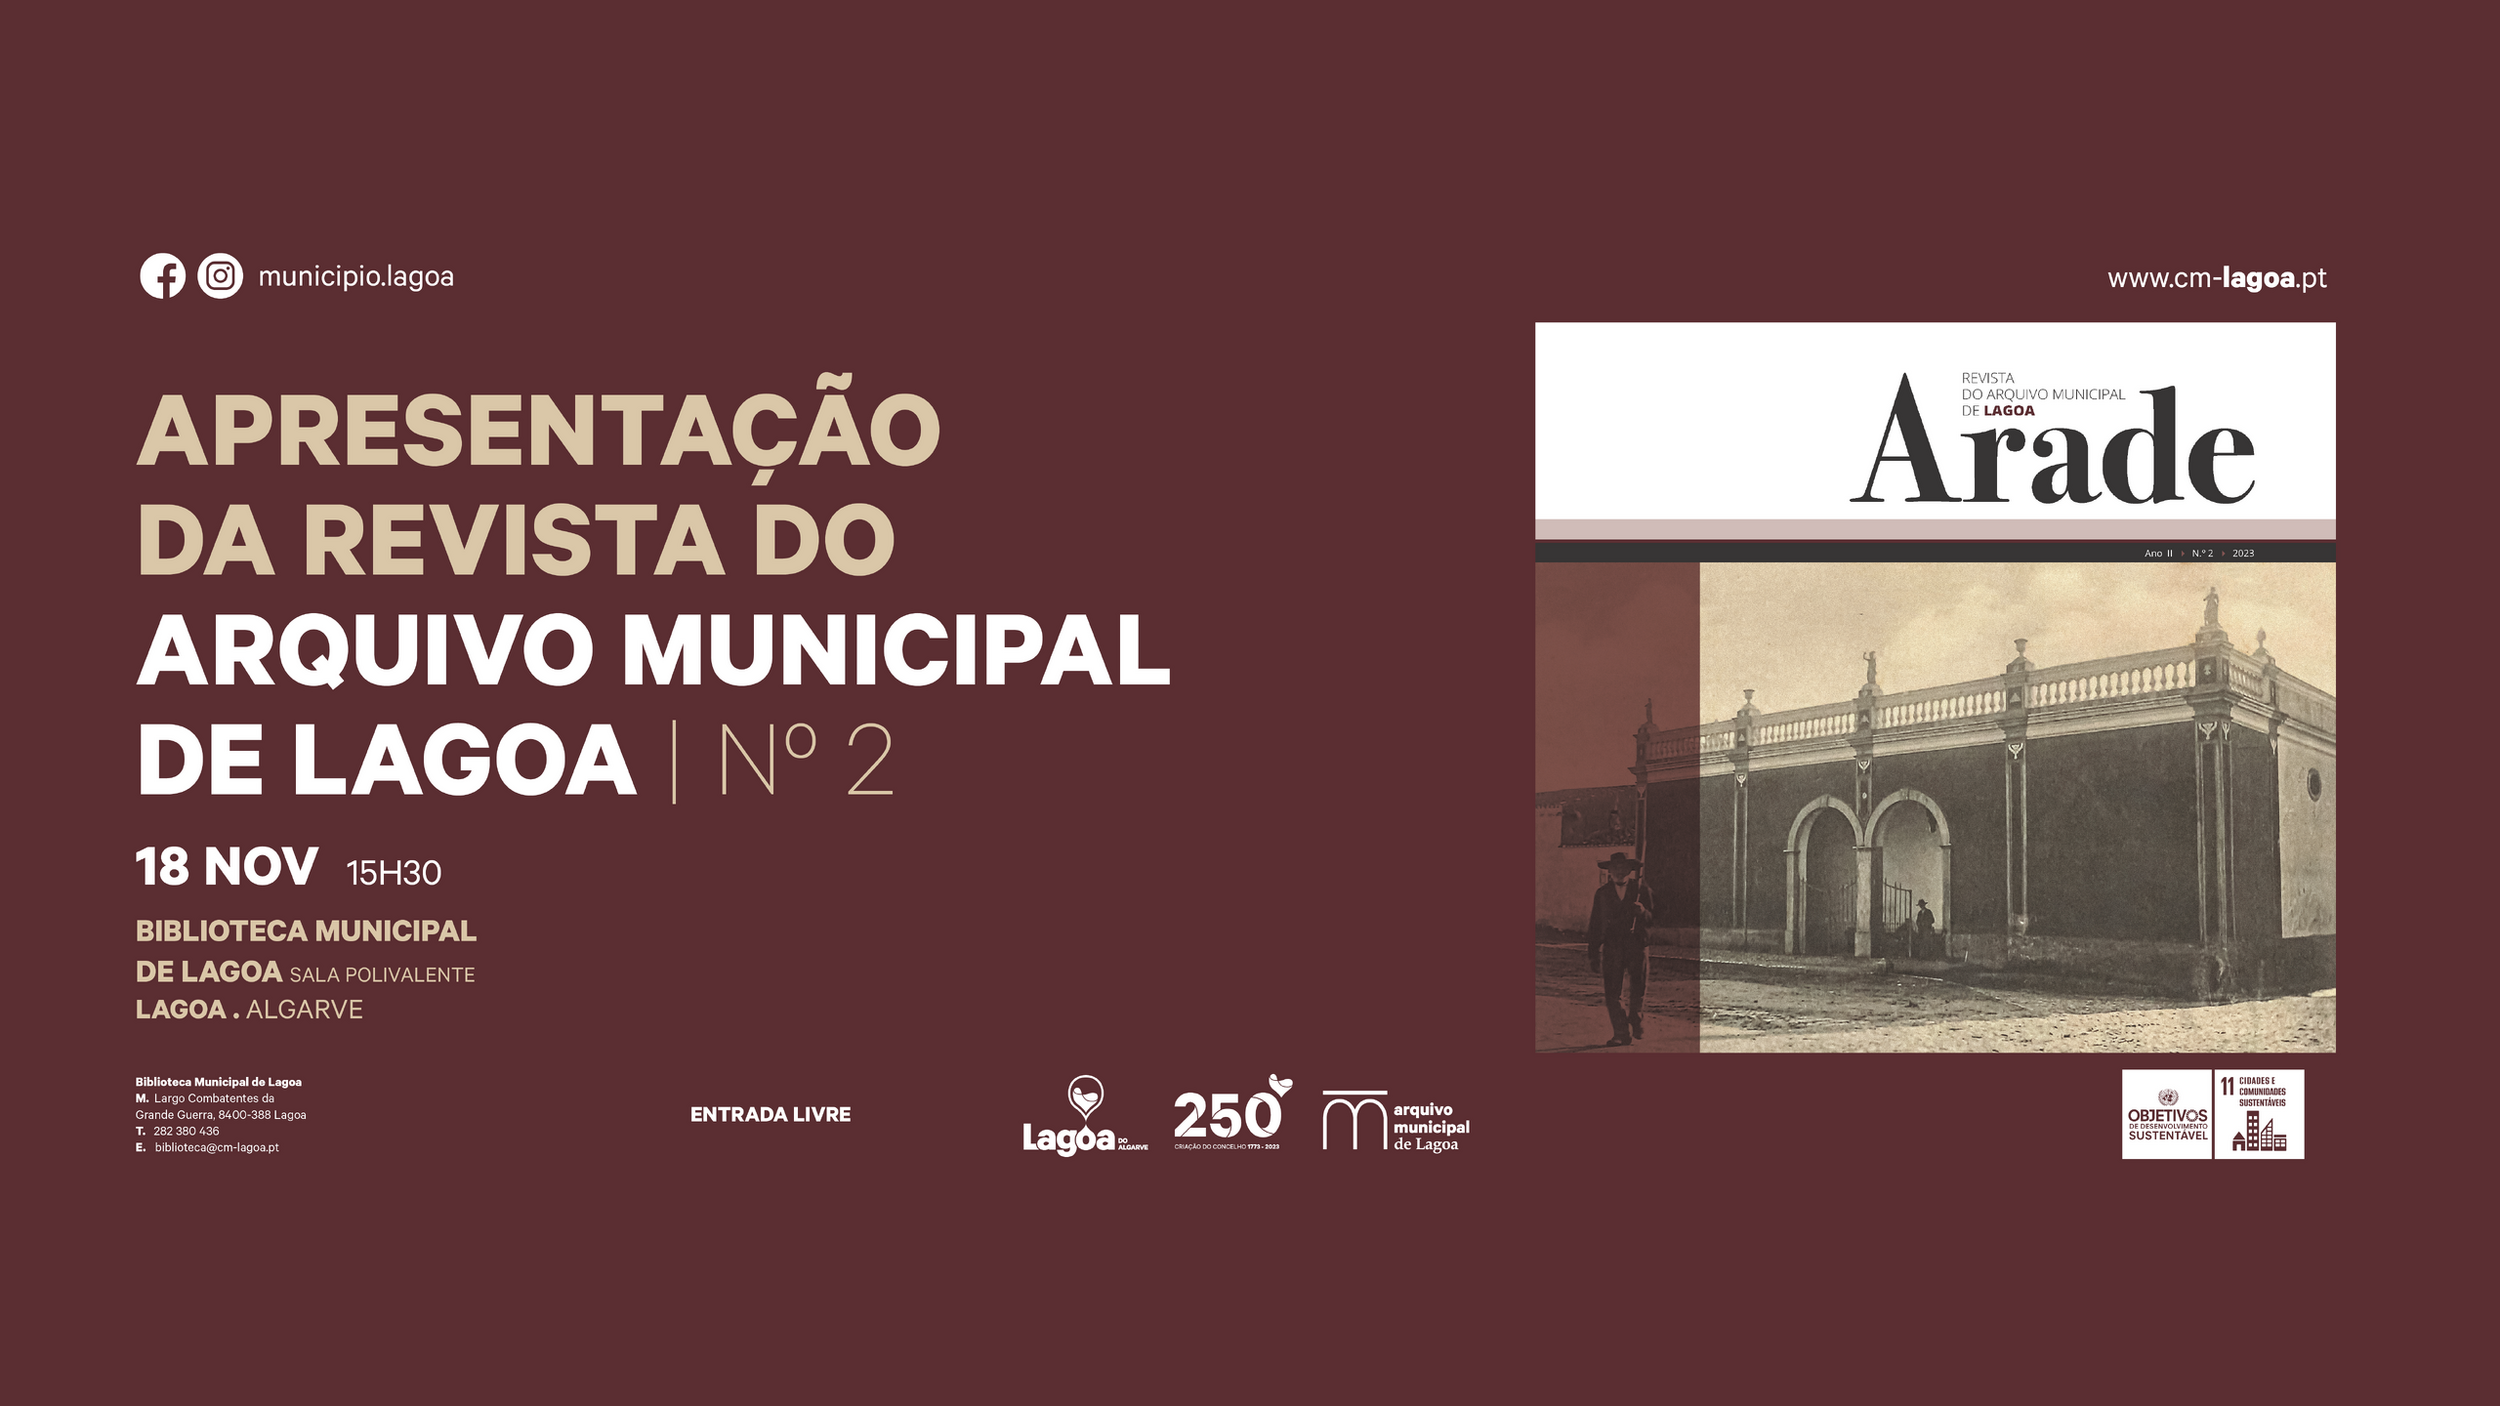 Apresentação da Revista Arade do Arquivo Municipal de Lagoa - Nº2